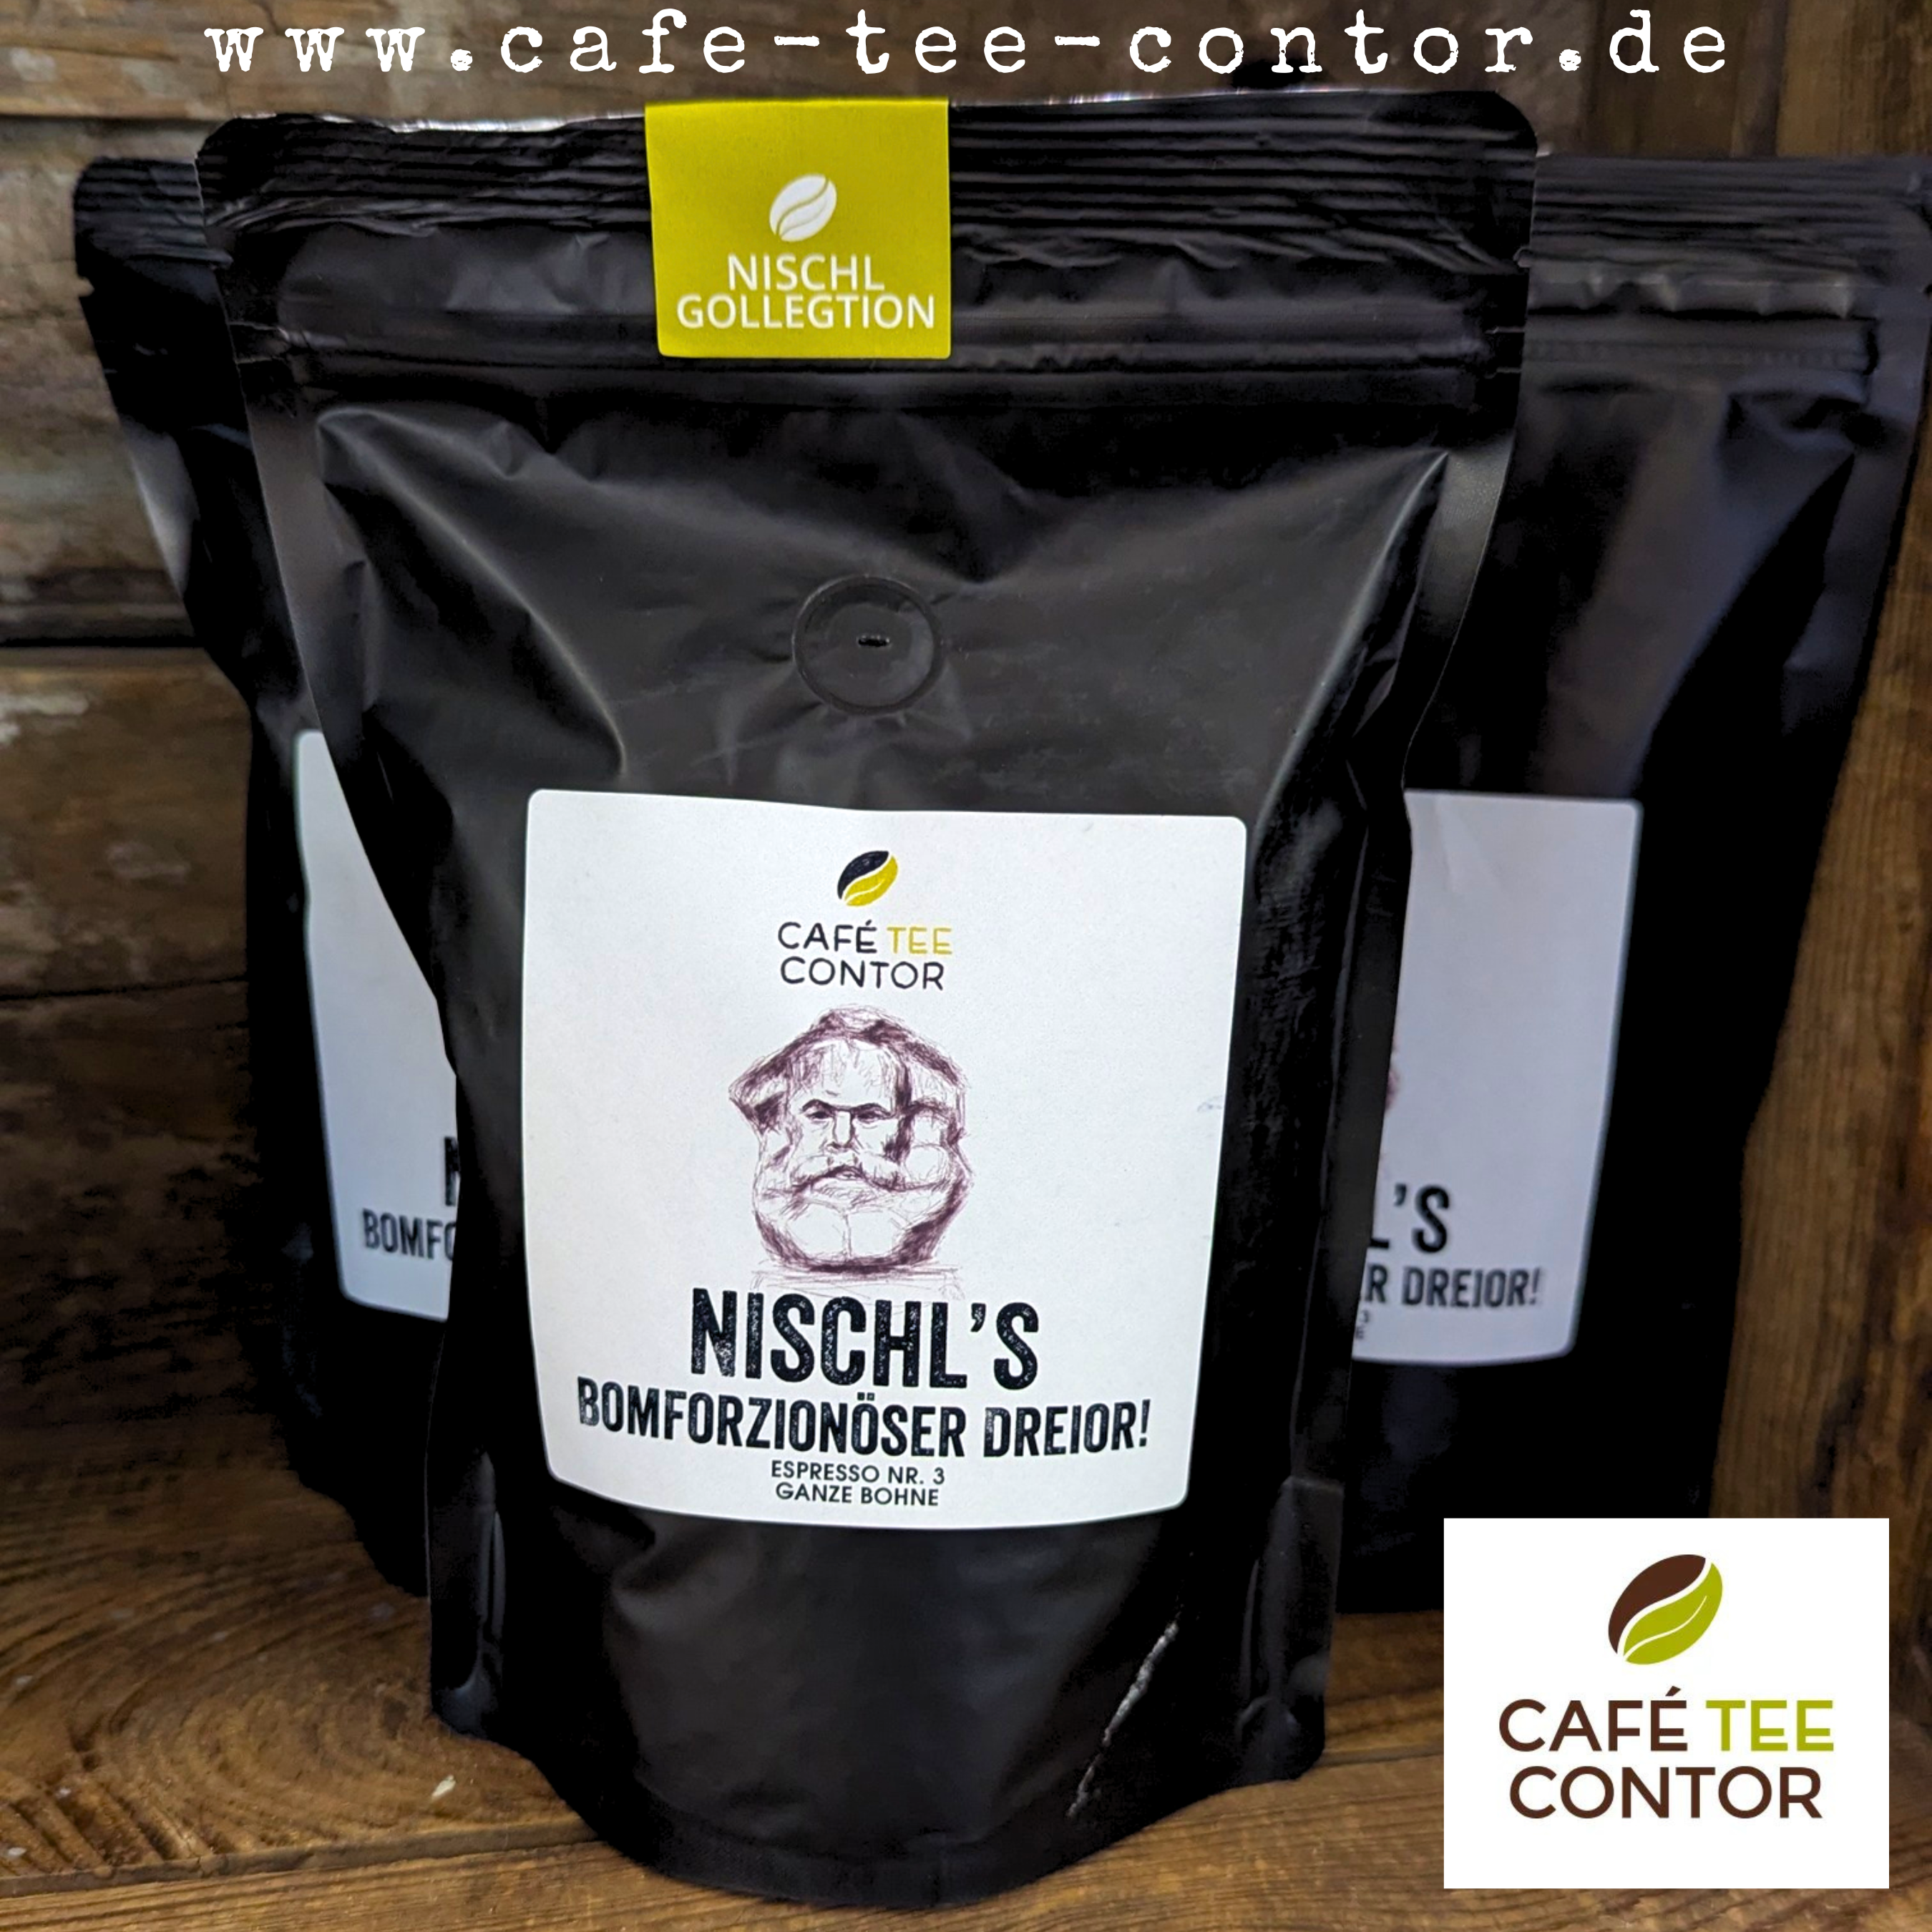 Nischl's Bomforzionöser Dreior! Chemnitz Gourmet Espresso